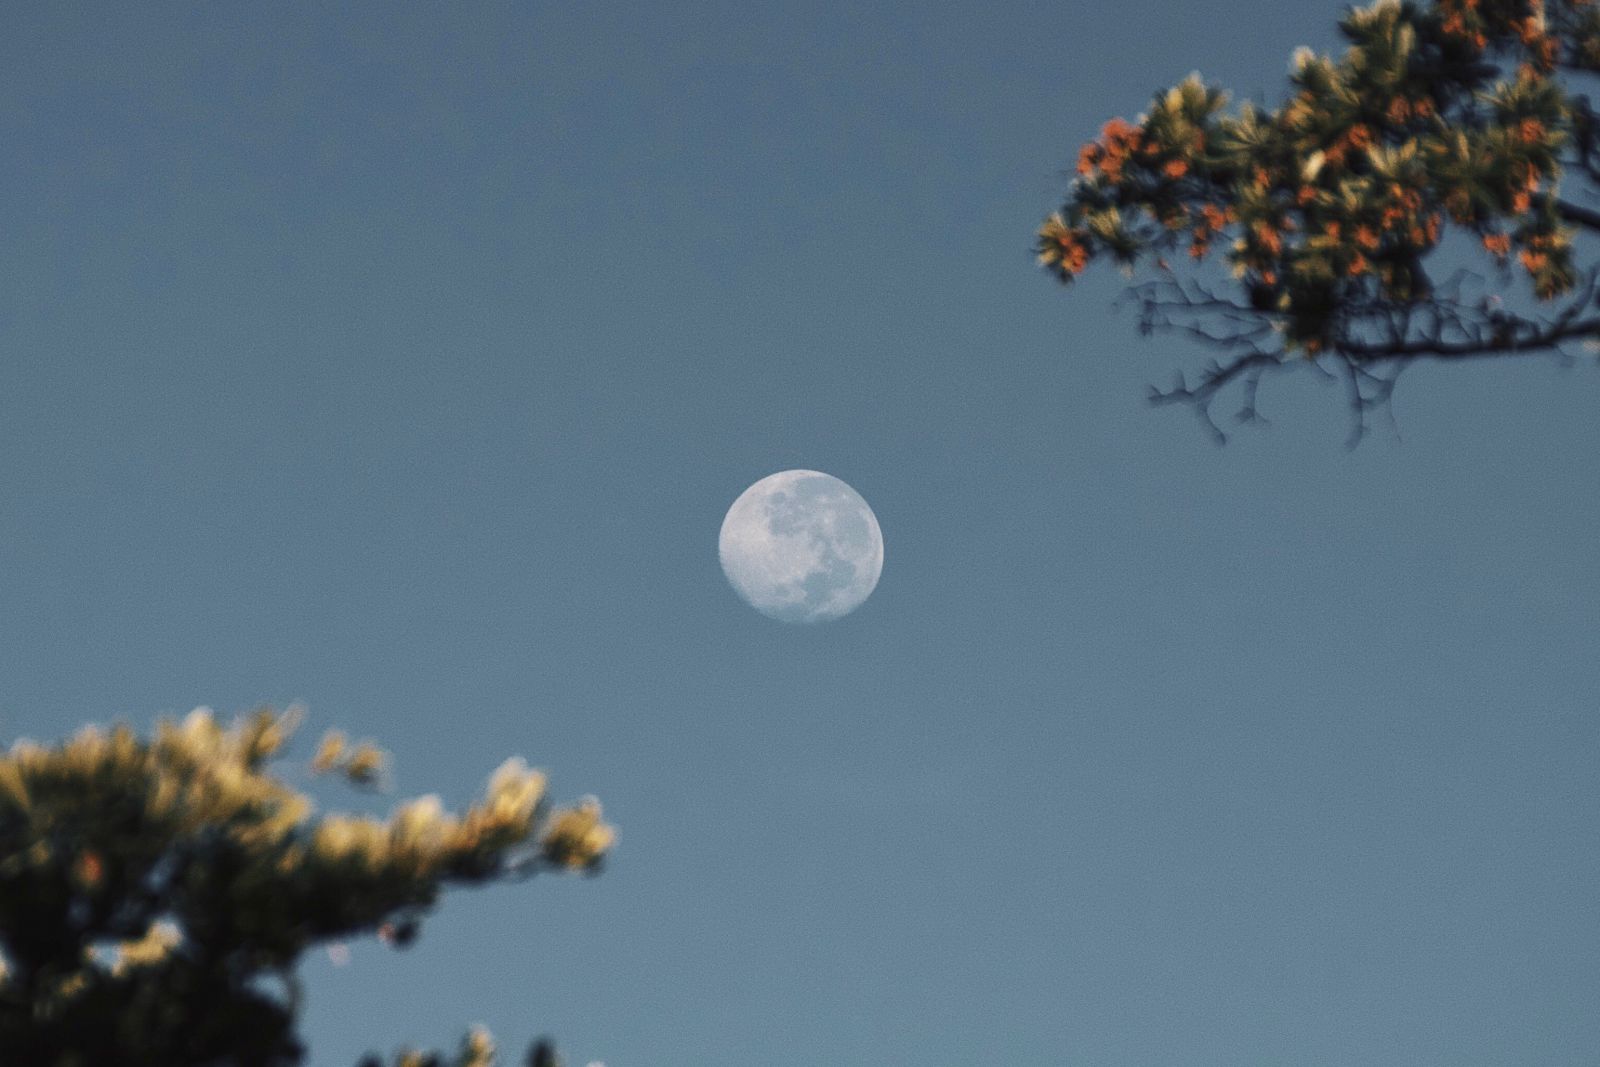 Lua cheia vista durante o dia, entre galhos de árvores.